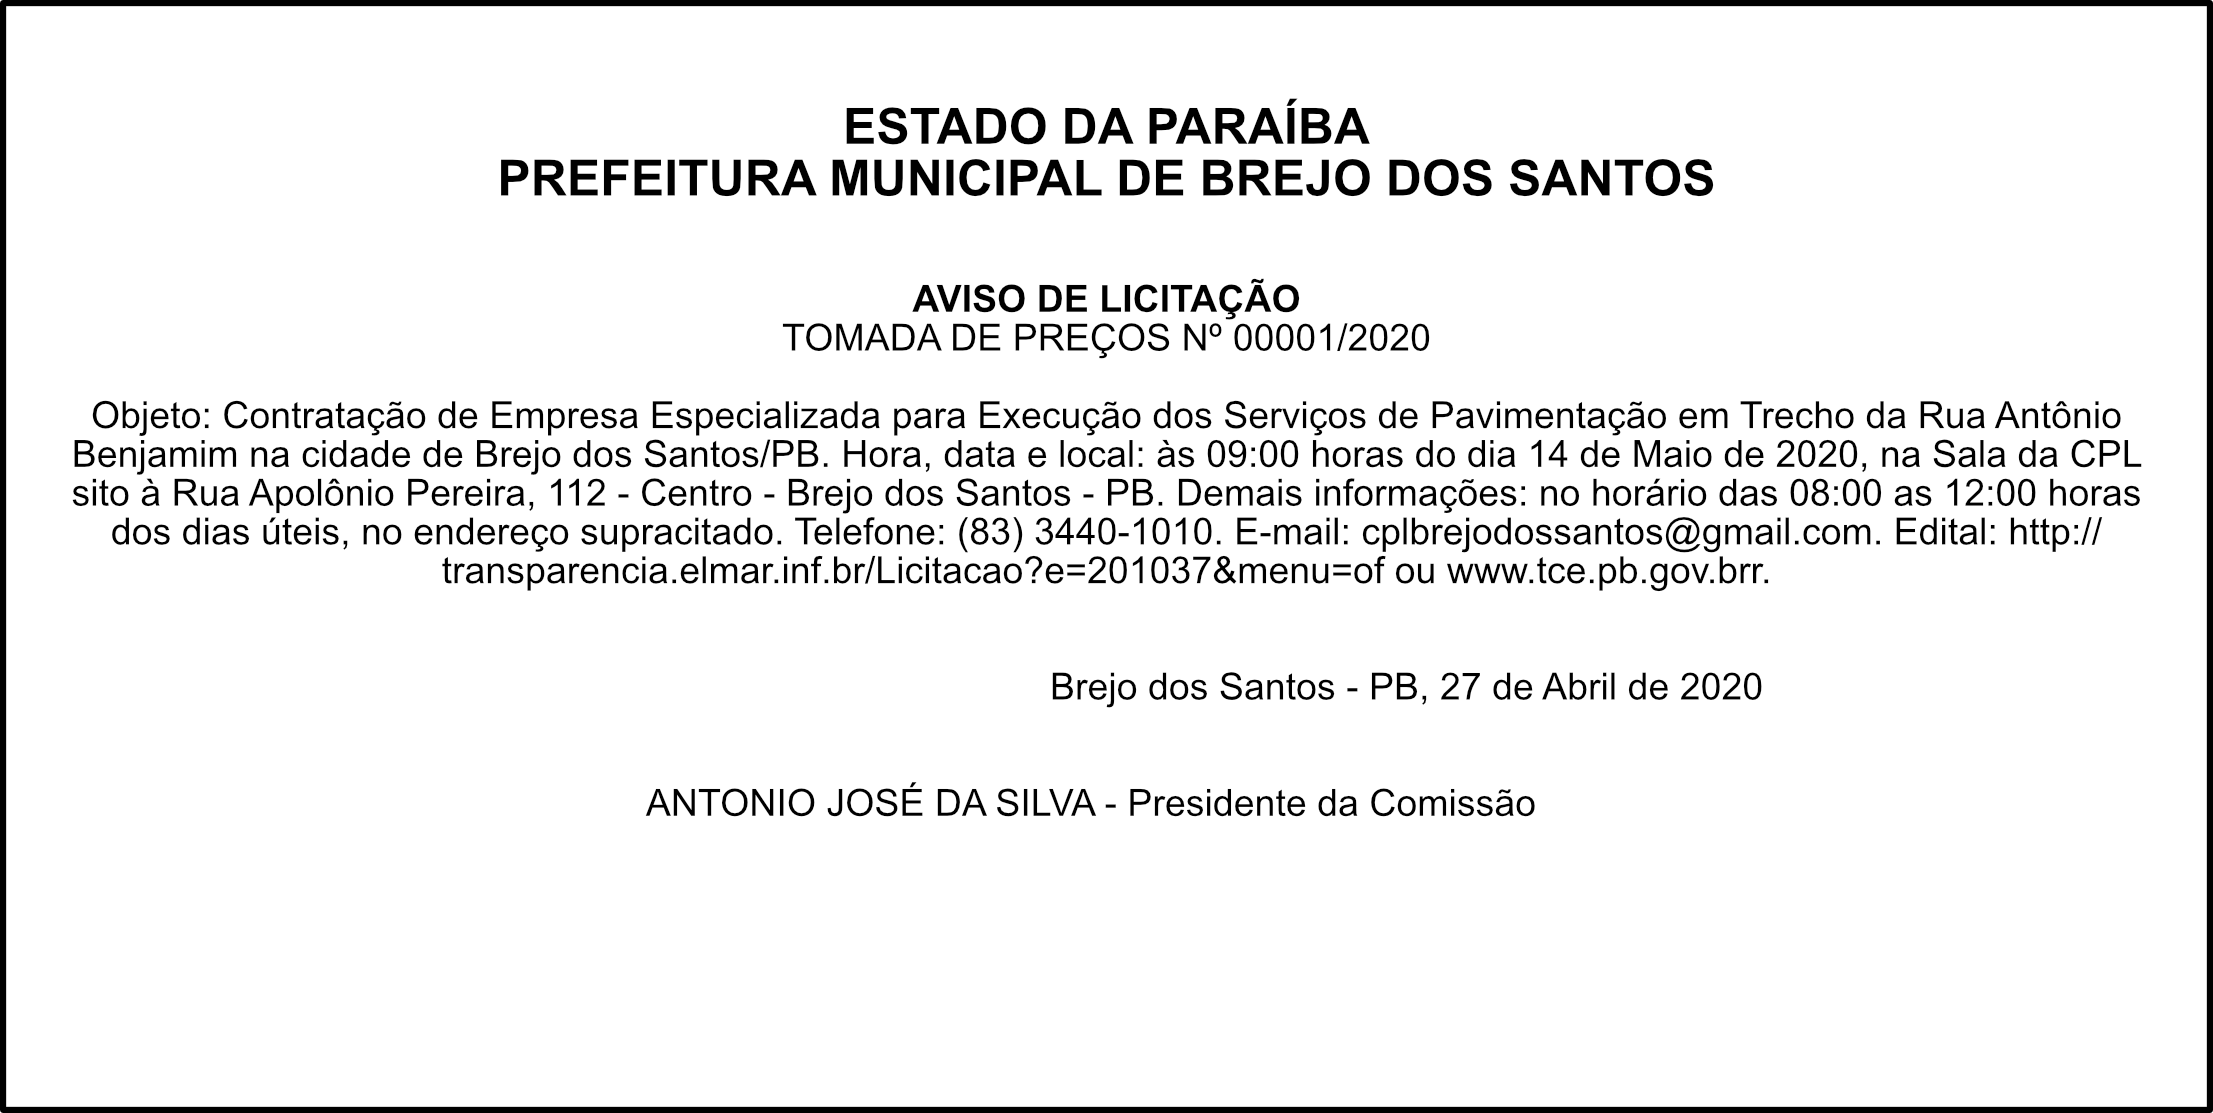 PREFEITURA MUNICIPAL DE BREJO DOS SANTOS – AVISO DE LICITAÇÃO – TP Nº 00001/2020